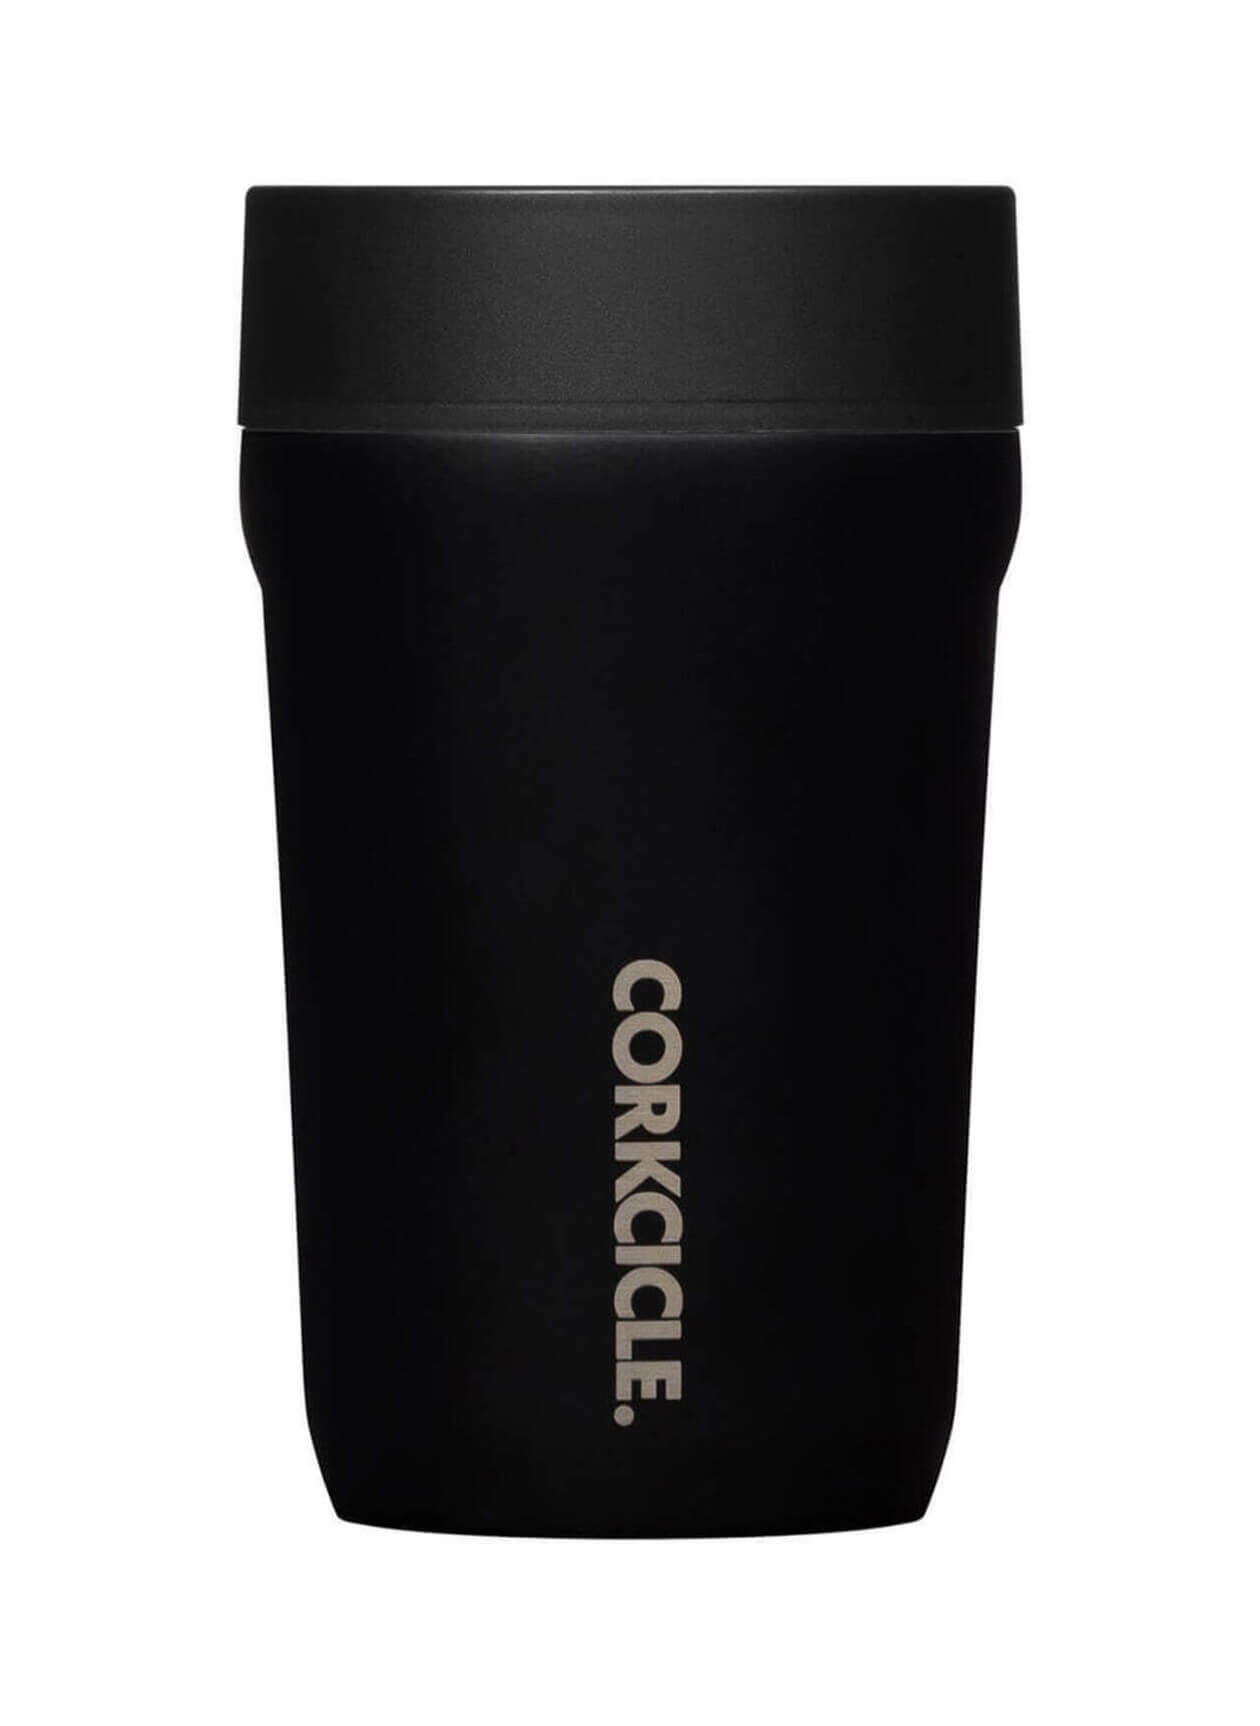 CORKCICLE. Commuter Cup - Matte Black / 9oz